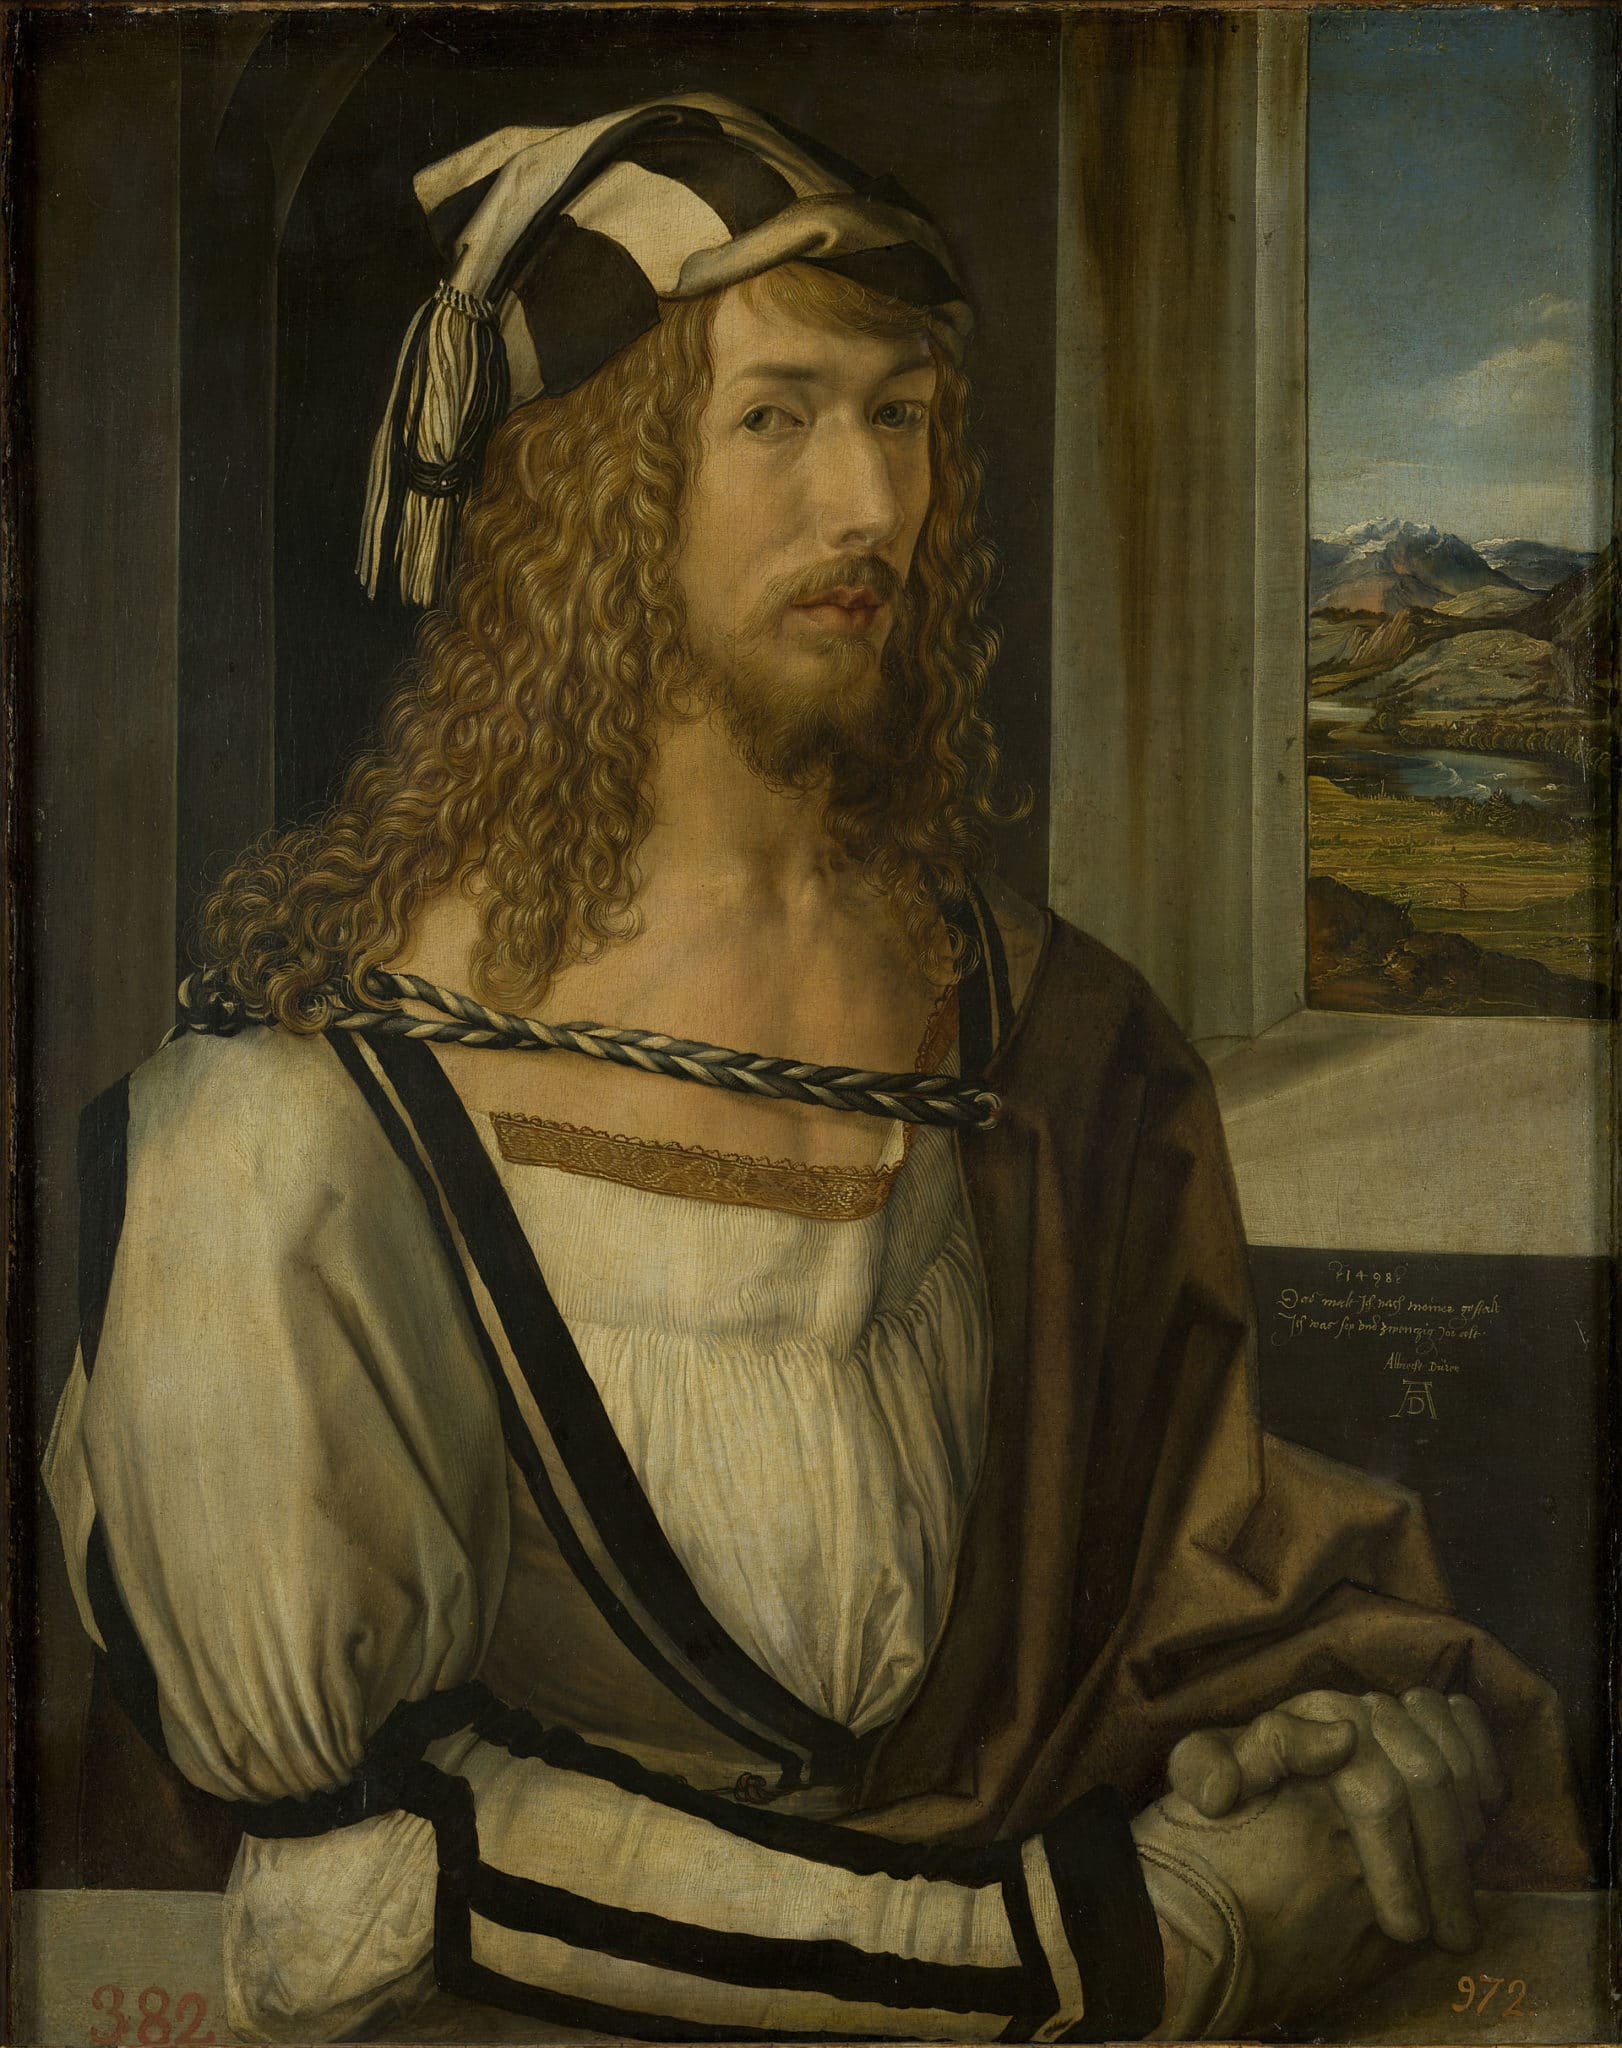 Альбрехт Дюрер. «Автопортрет». 1498. Музей Прадо, Мадрид. (Общественное достояние)